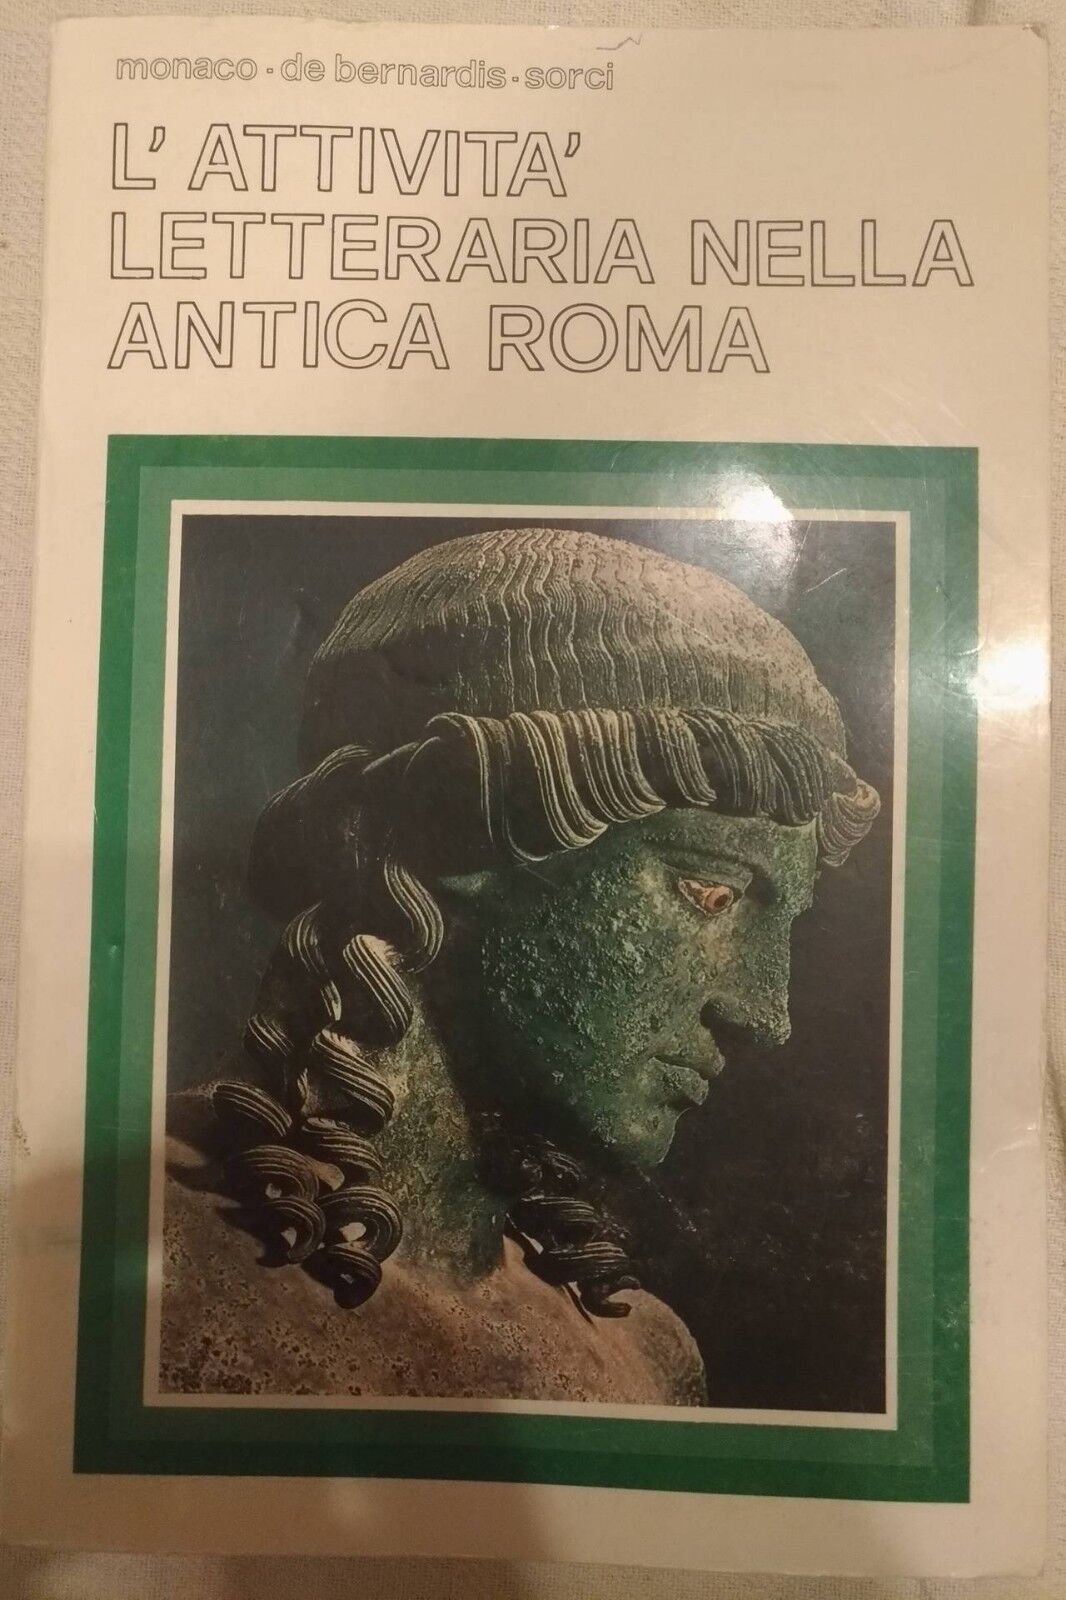 L'attivit? letteraria nell'antica roma - Monaco, De Bernardis, Sorci, 1982 - S